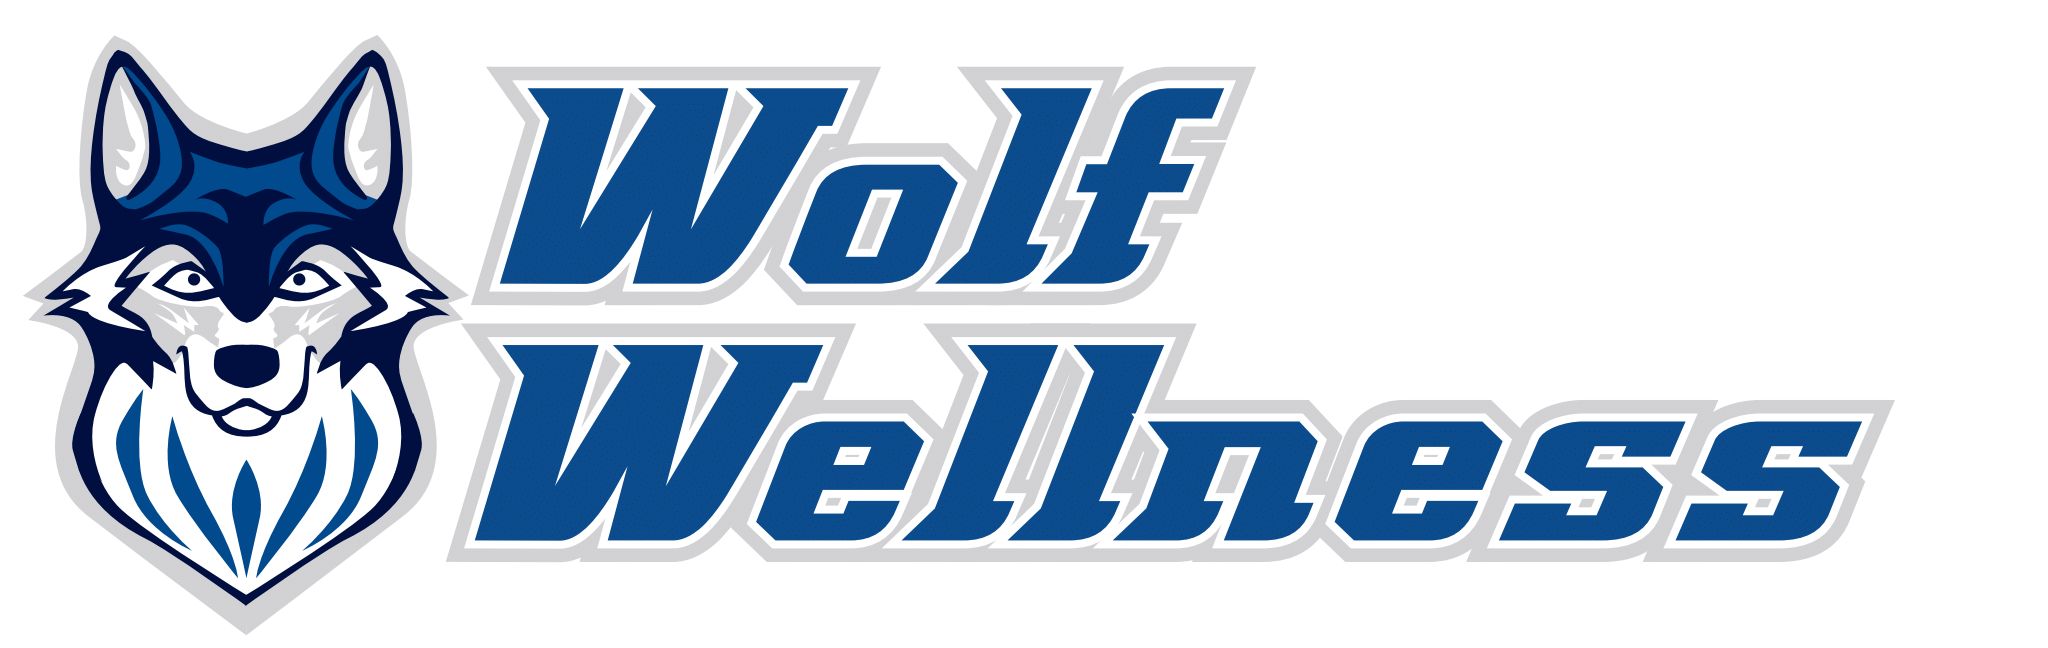 Wolf Wellness Logo